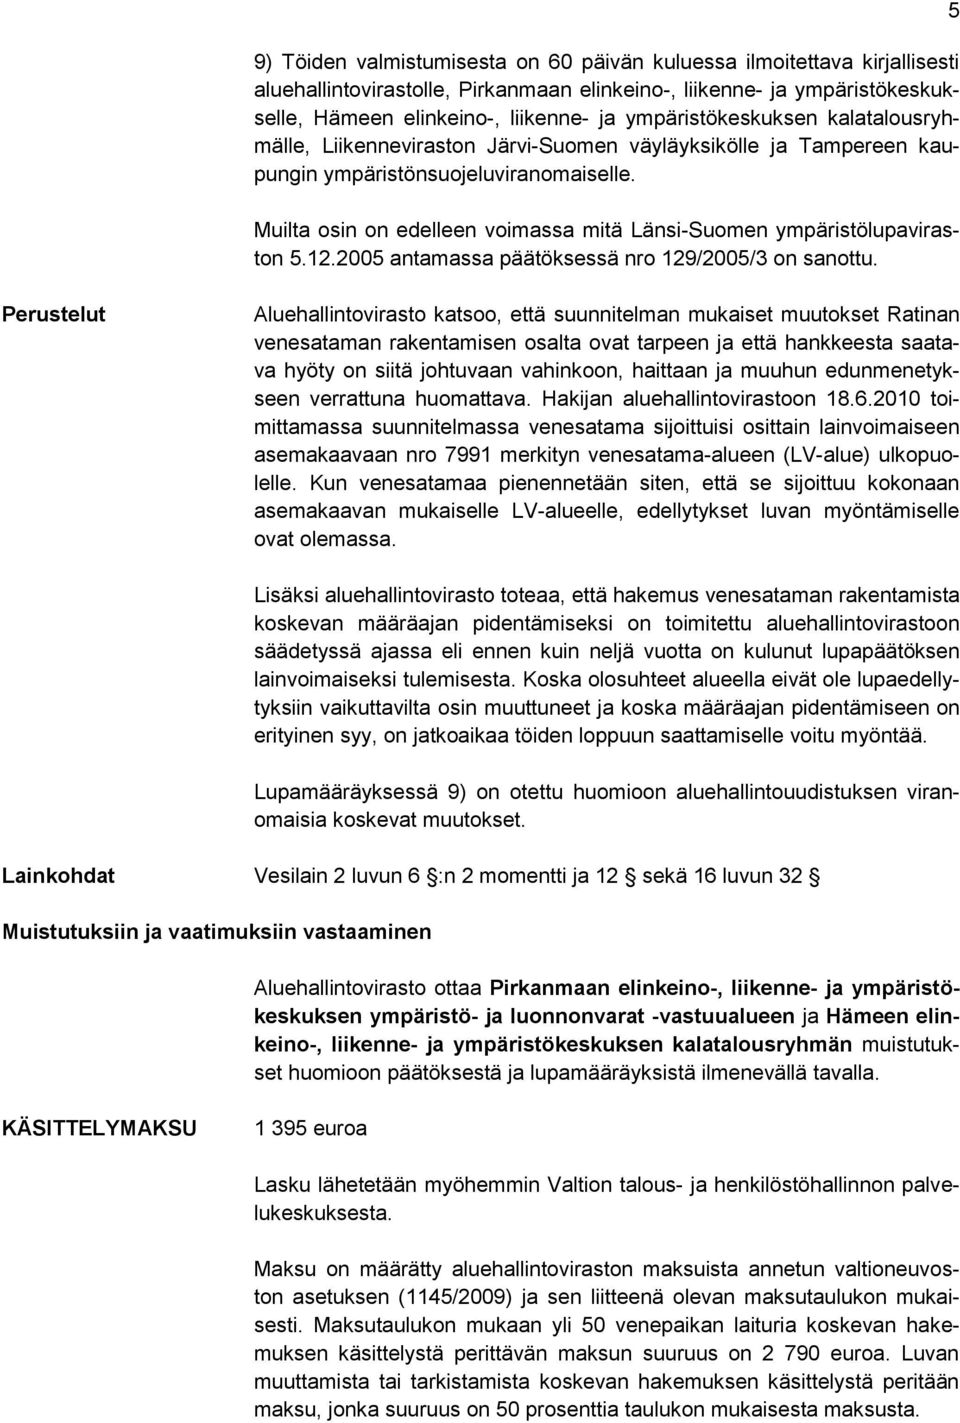 Muilta osin on edelleen voimassa mitä Länsi-Suomen ympäristölupaviraston 5.12.2005 antamassa päätöksessä nro 129/2005/3 on sanottu.